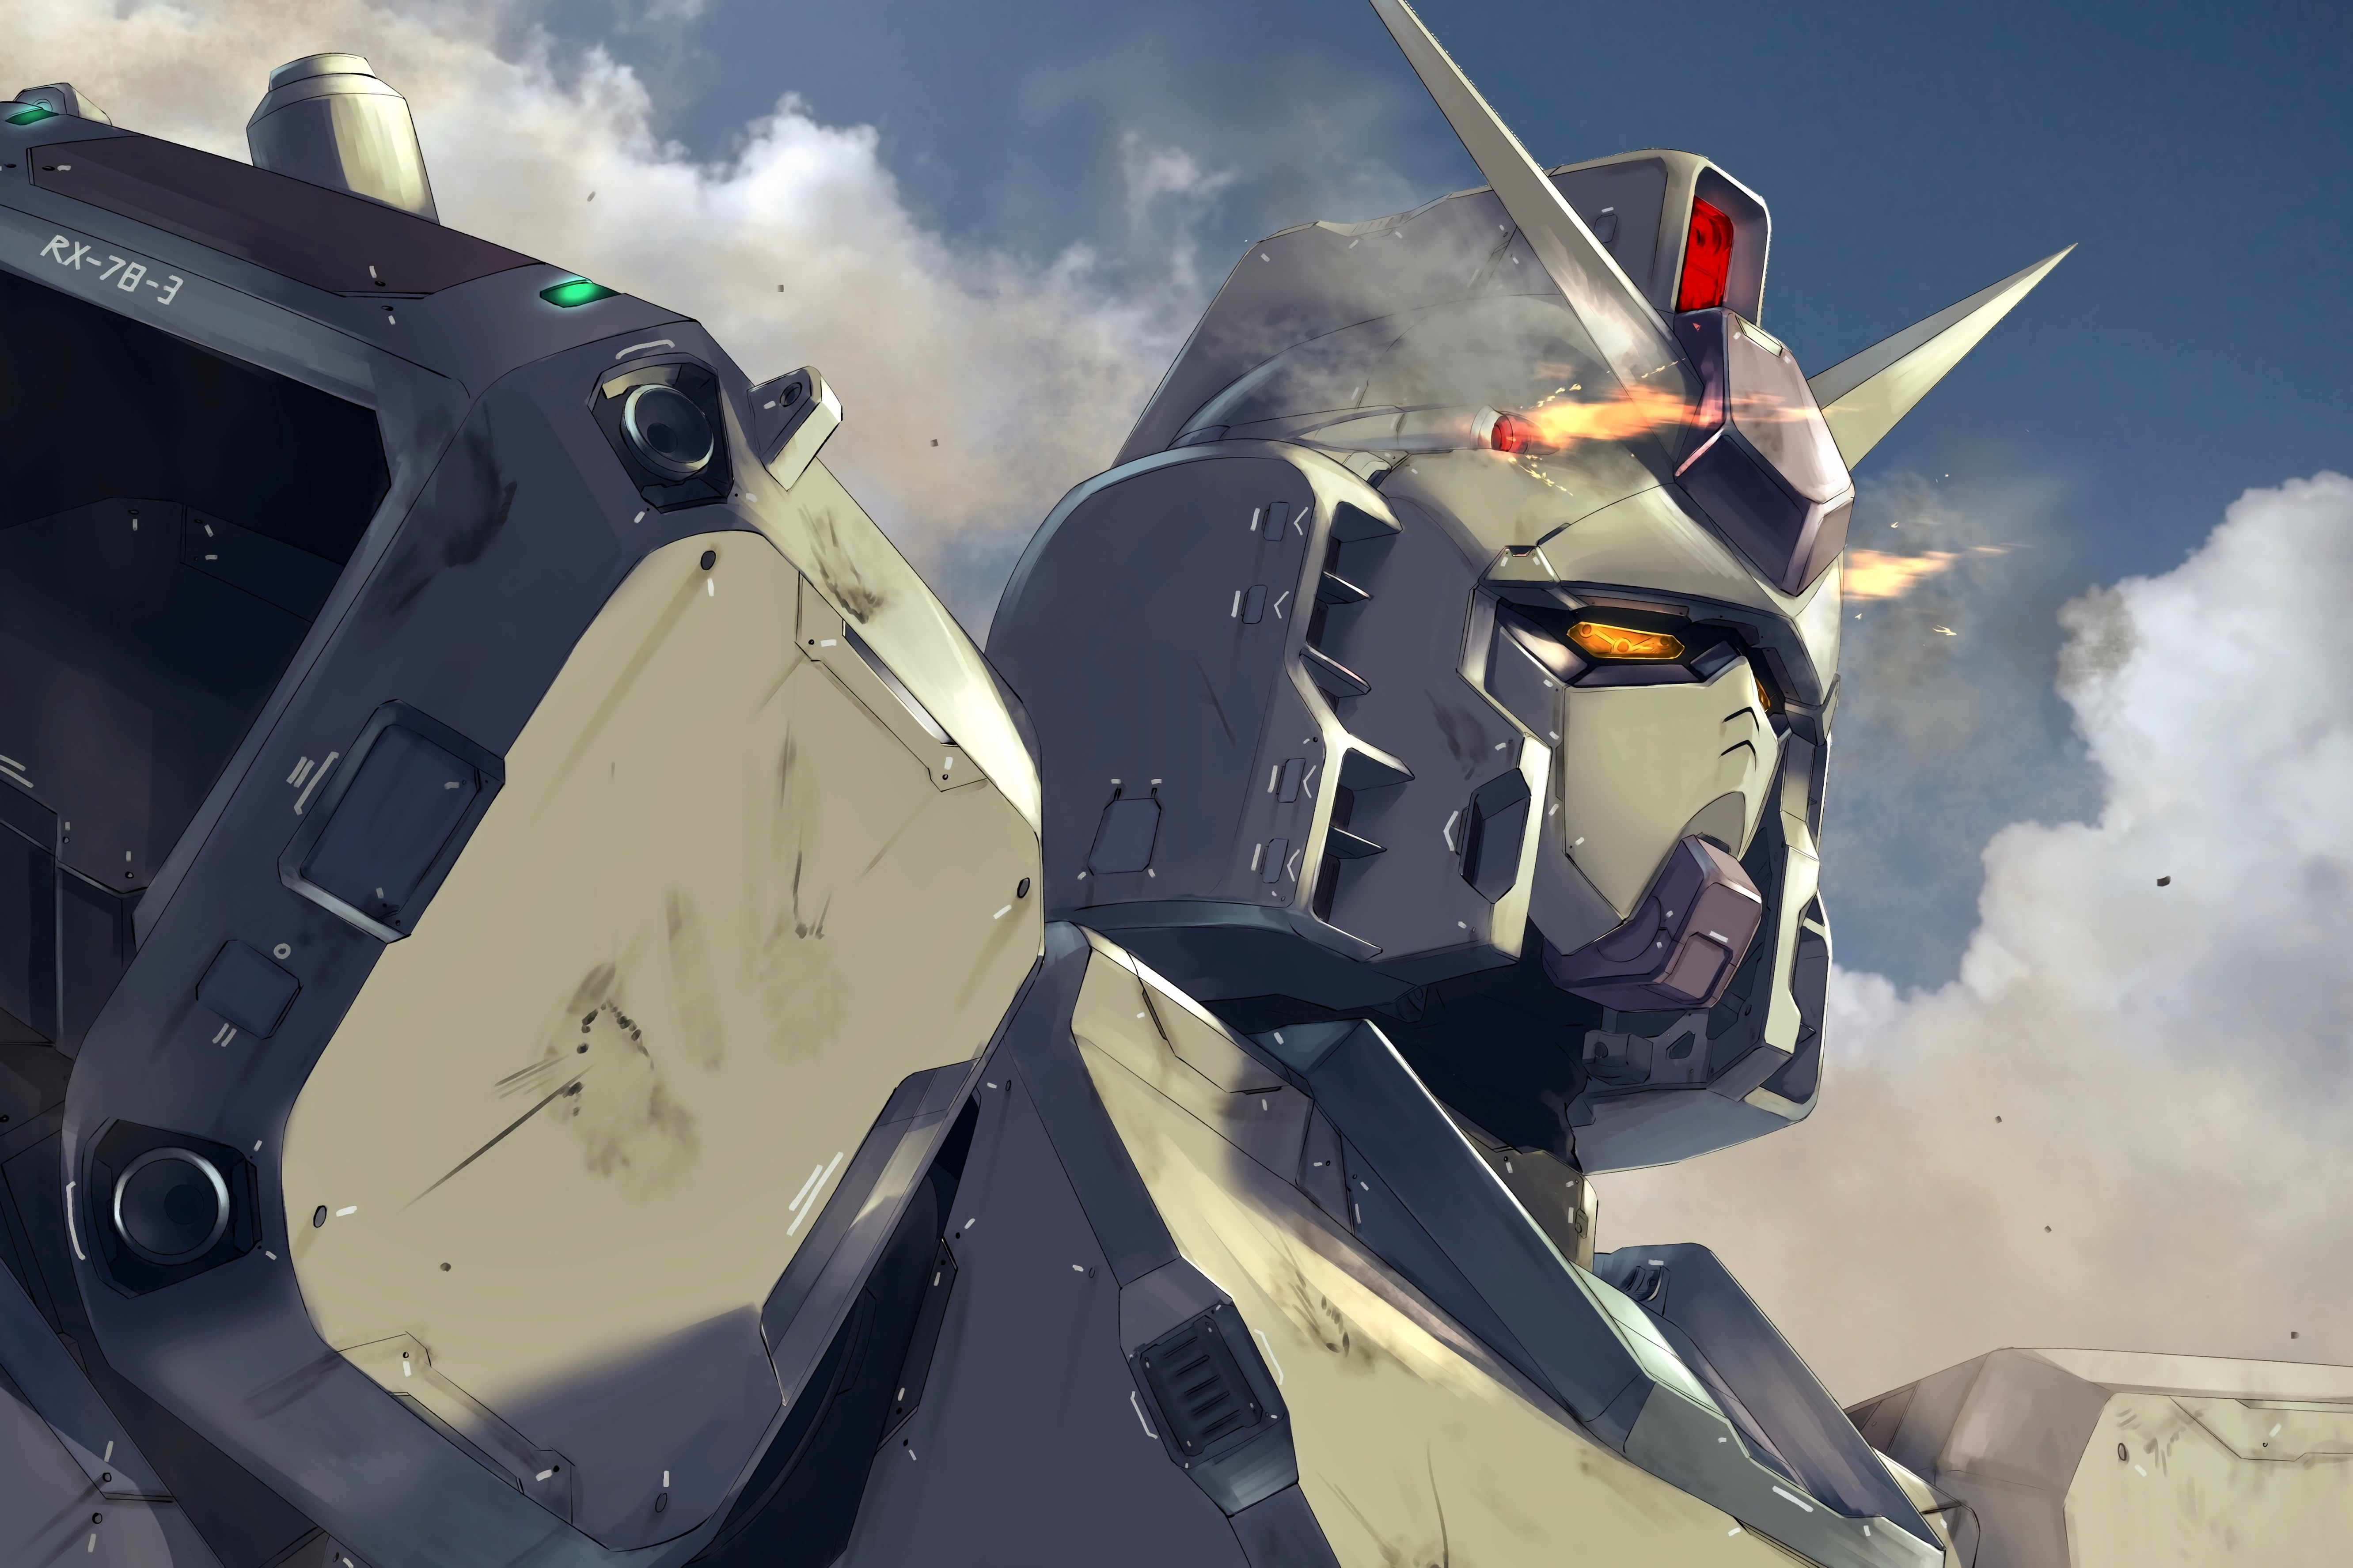 Digital Art Gundam Robot Futurism Mechs Anime 5326x3550